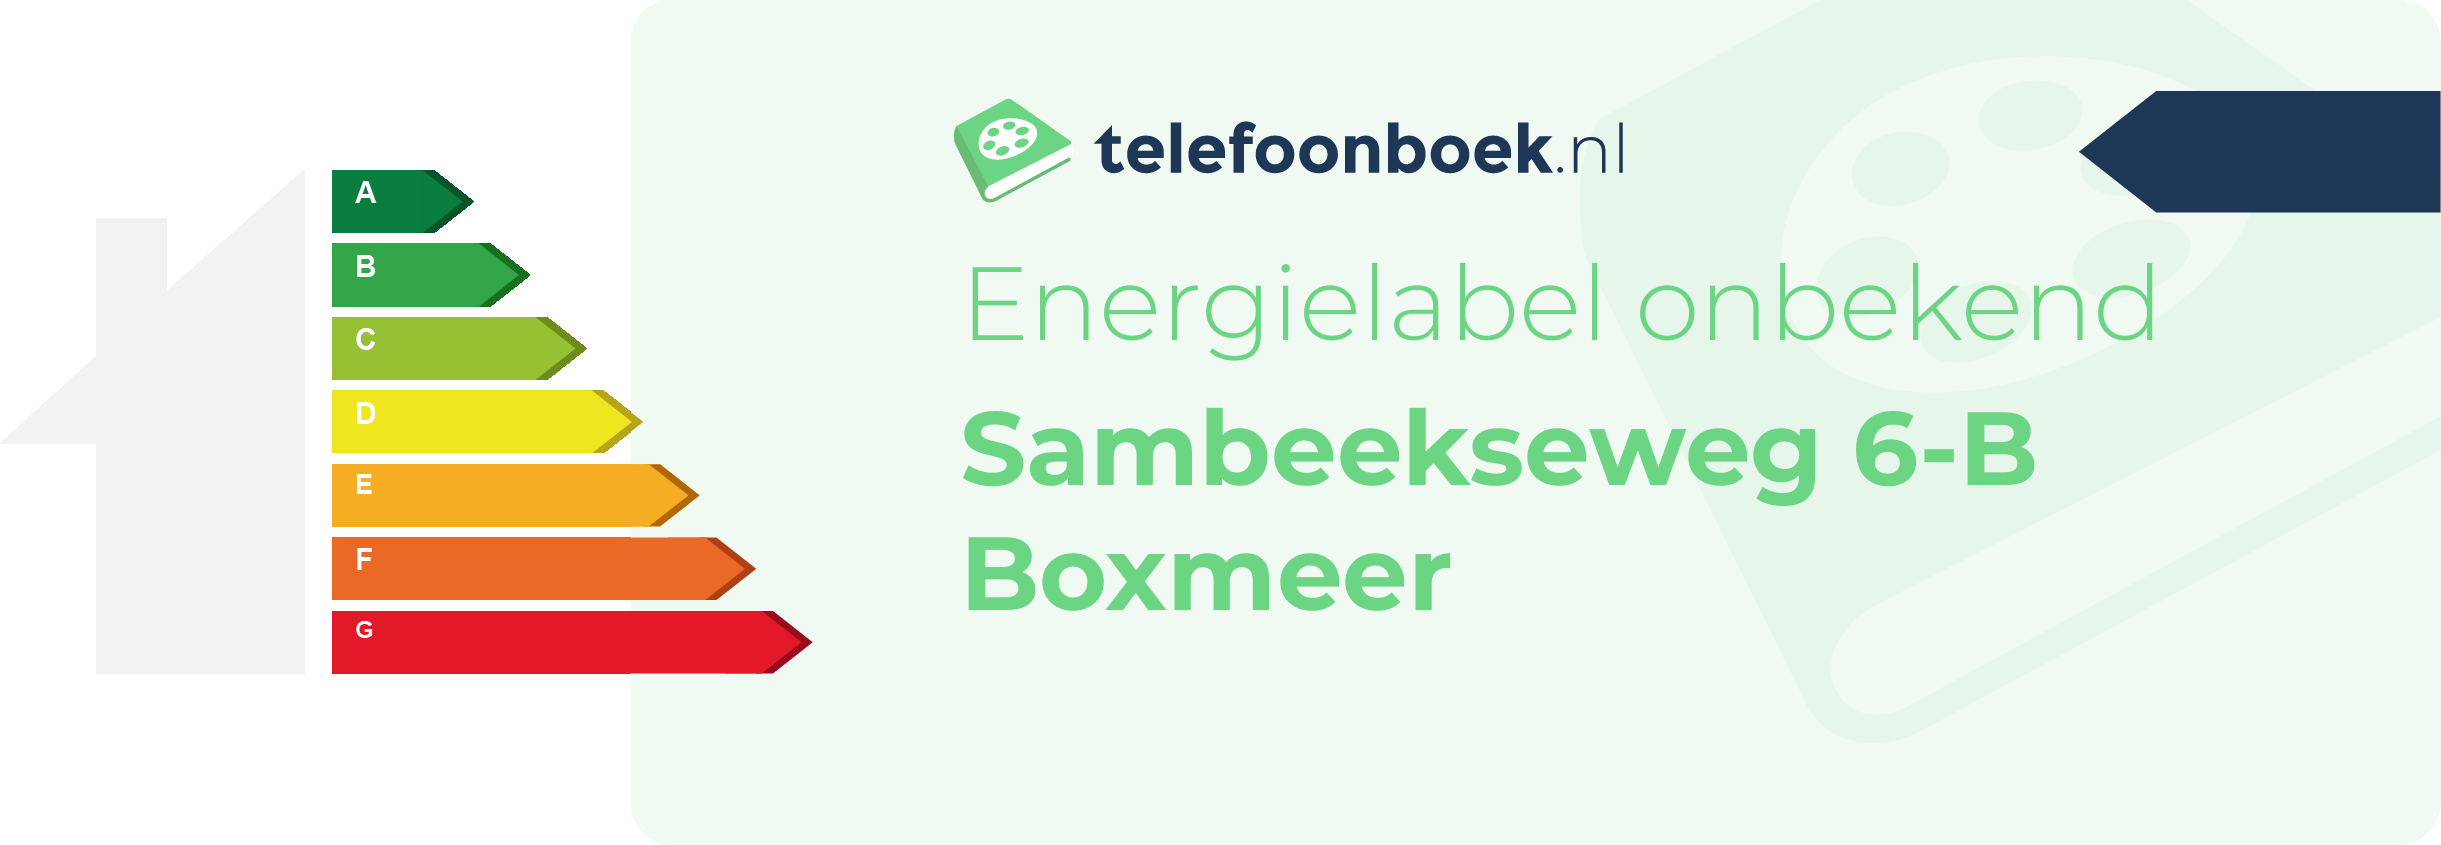 Energielabel Sambeekseweg 6-B Boxmeer